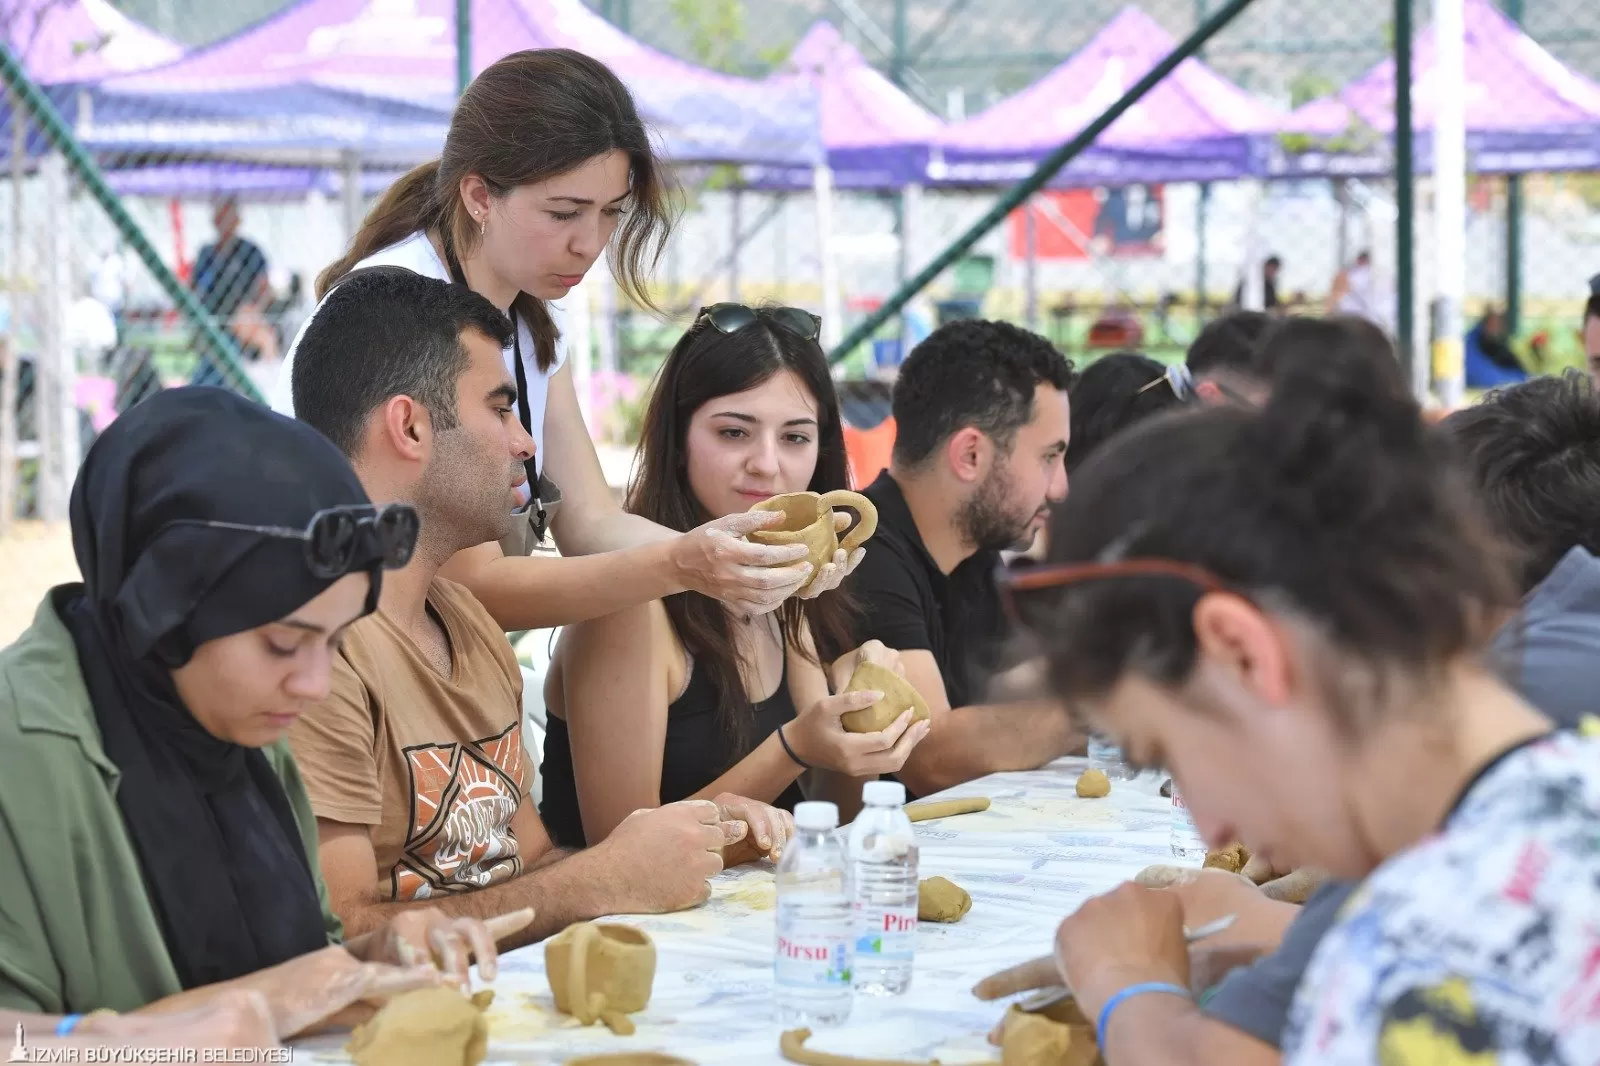 İzmir Büyükşehir Belediyesi'nin 19 Mayıs kutlamaları kapsamında düzenlediği İzmir Gençlik Festivali, Özdere'de coşkulu bir şekilde gerçekleşti.